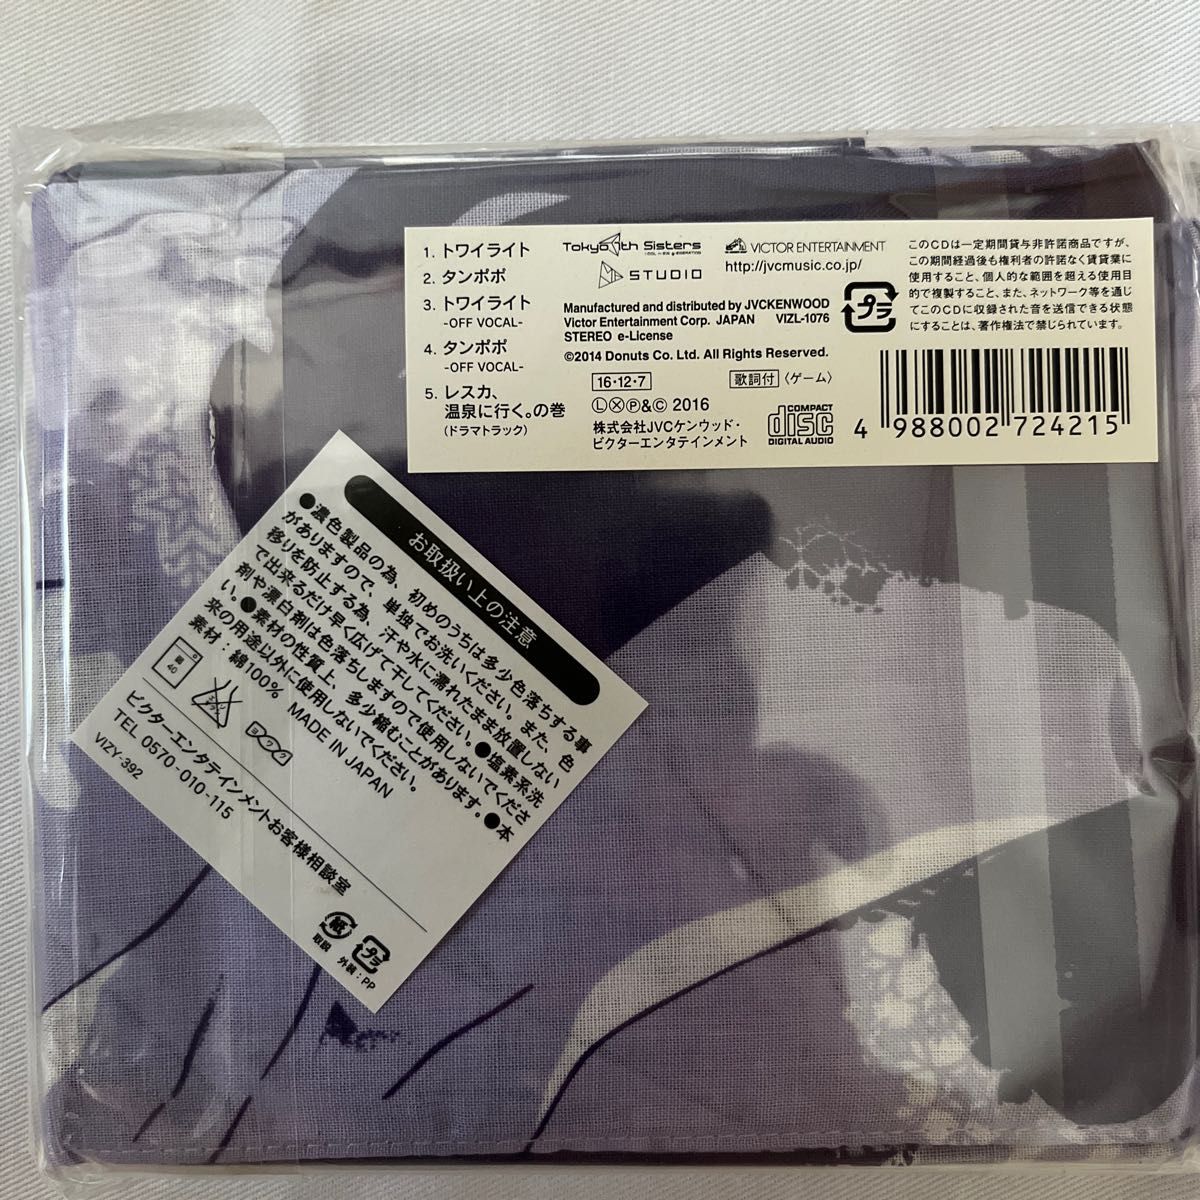 CD Le☆S☆Ca? (吉井彩実、藤田茜、植田ひかる) トワイライト 初回限定盤 [ビクターエンタテインメント]